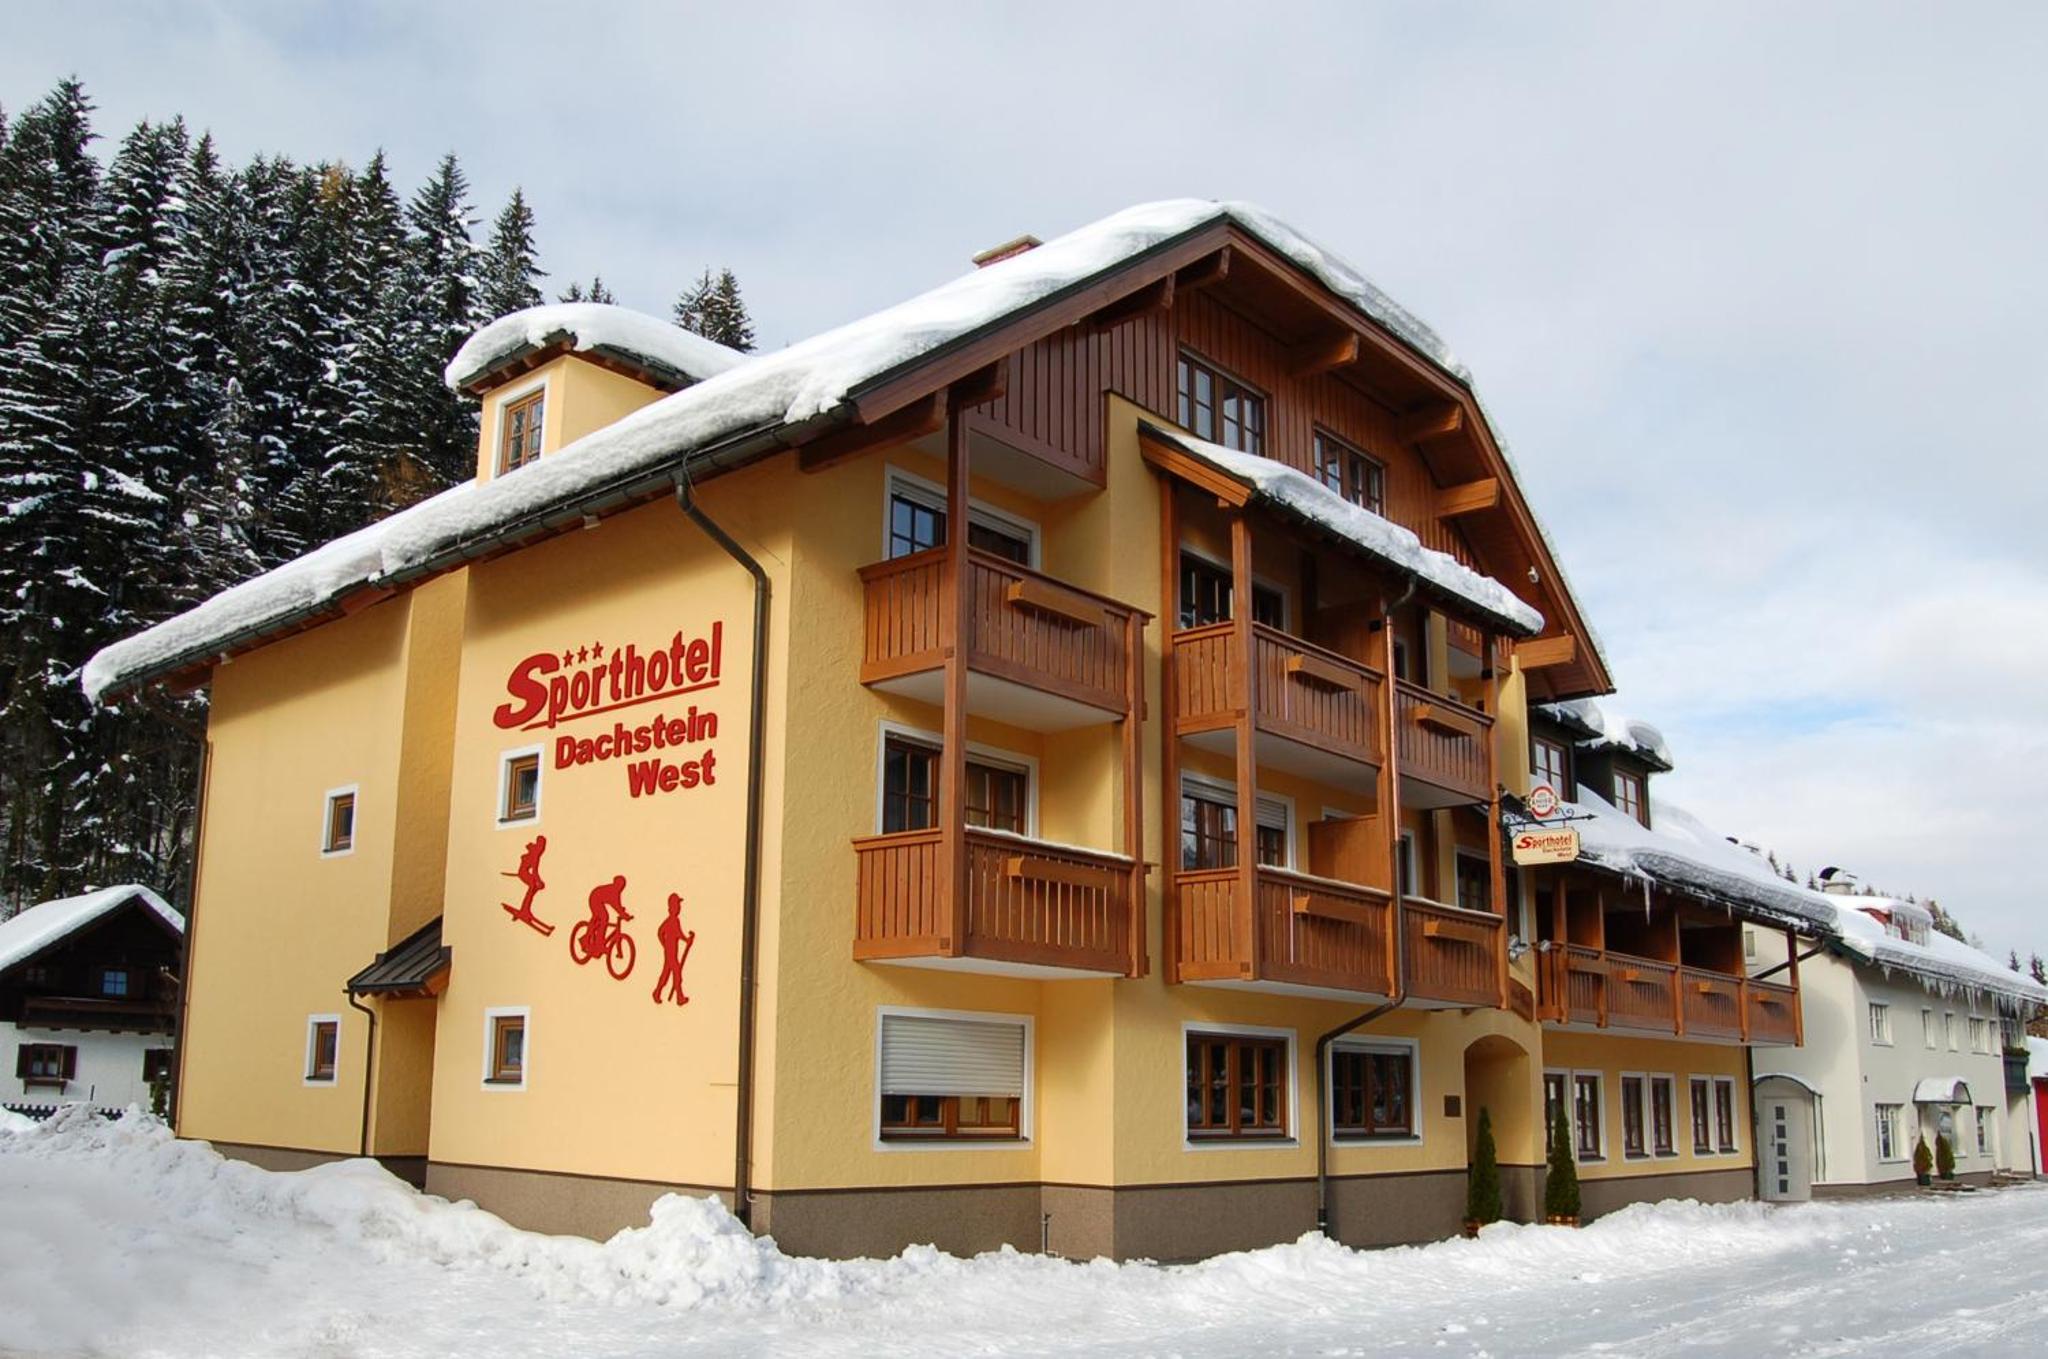 Dachstein West Sporthotel